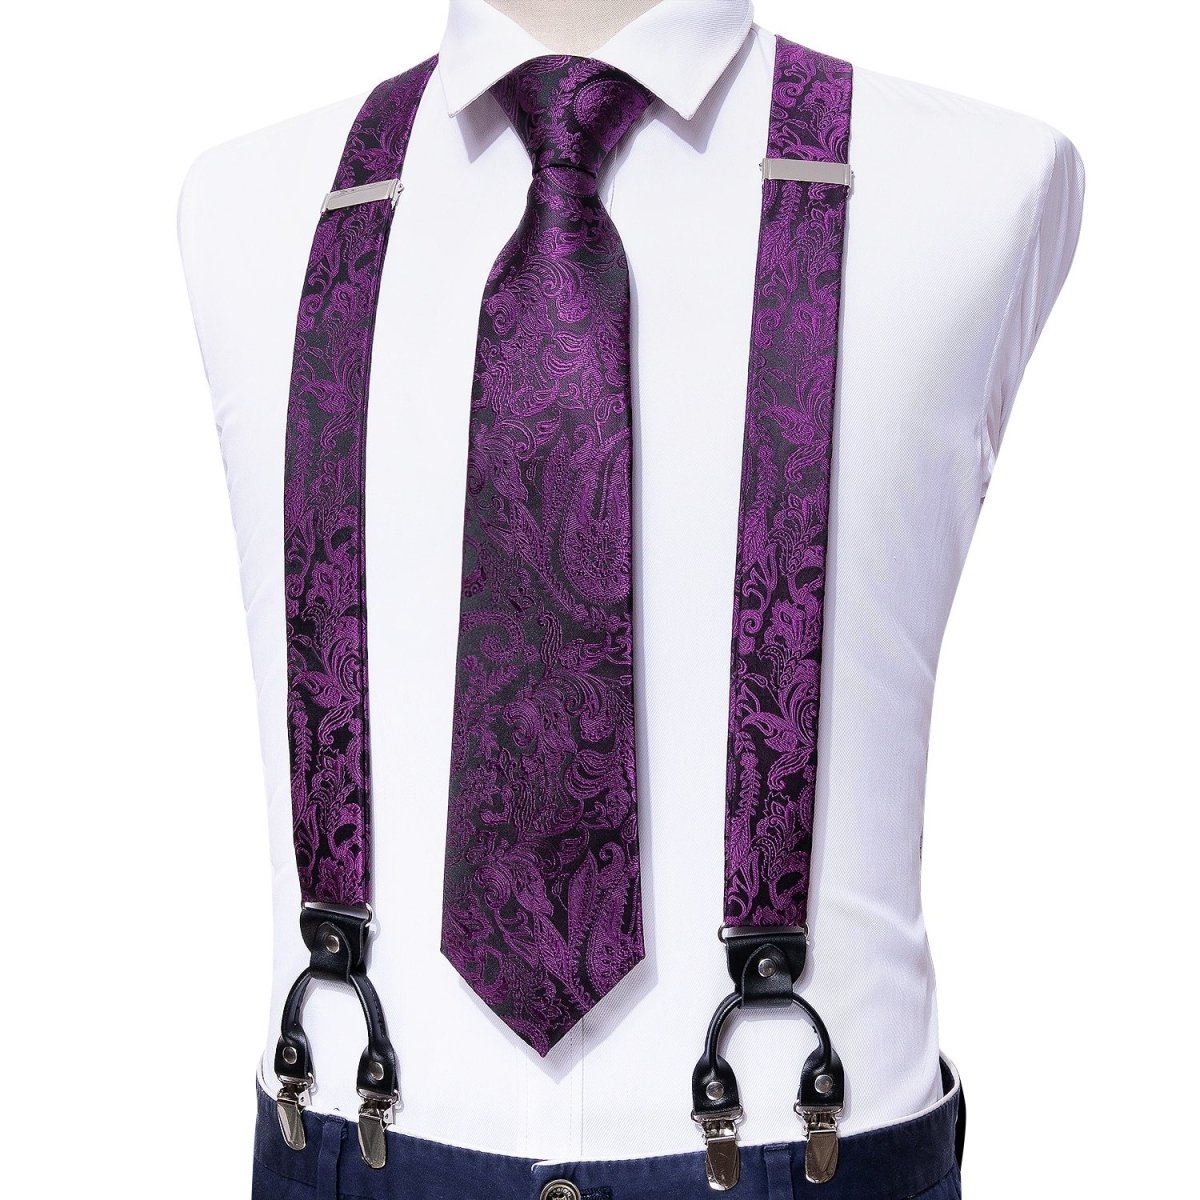 4pc Tie & Suspender Sets